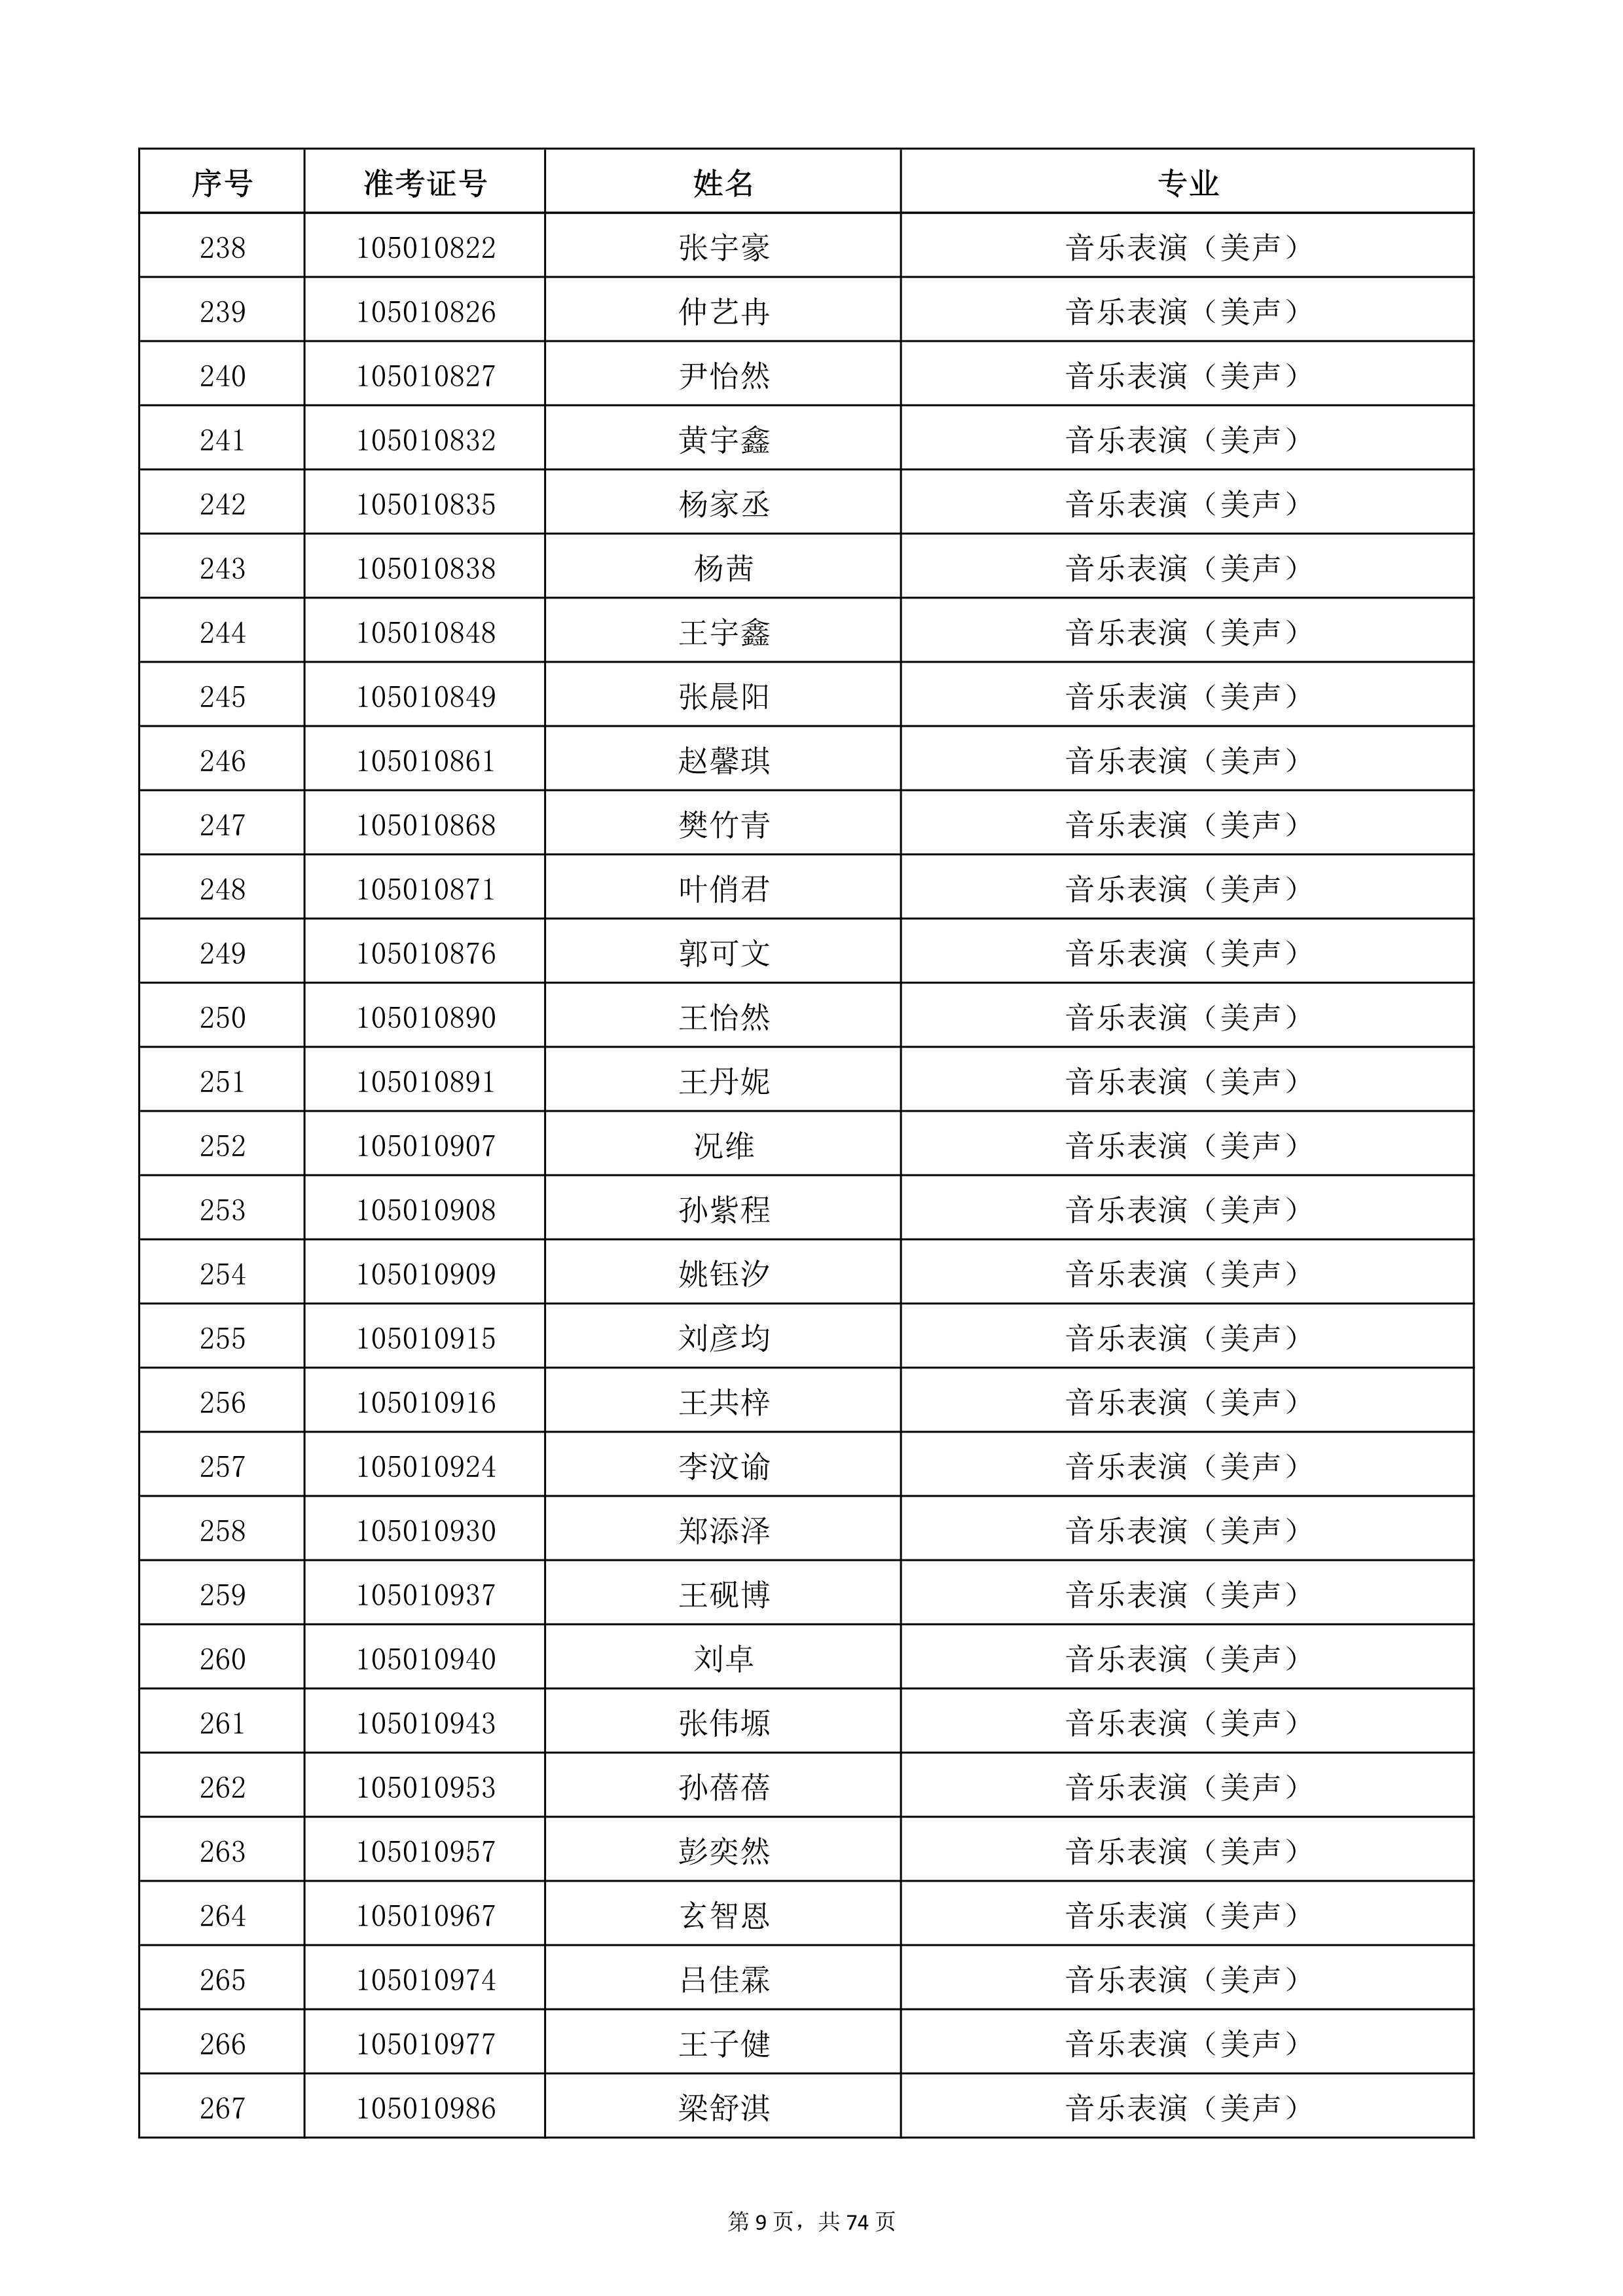 天津音乐学院2022年本科招生考试复试名单_9.jpg